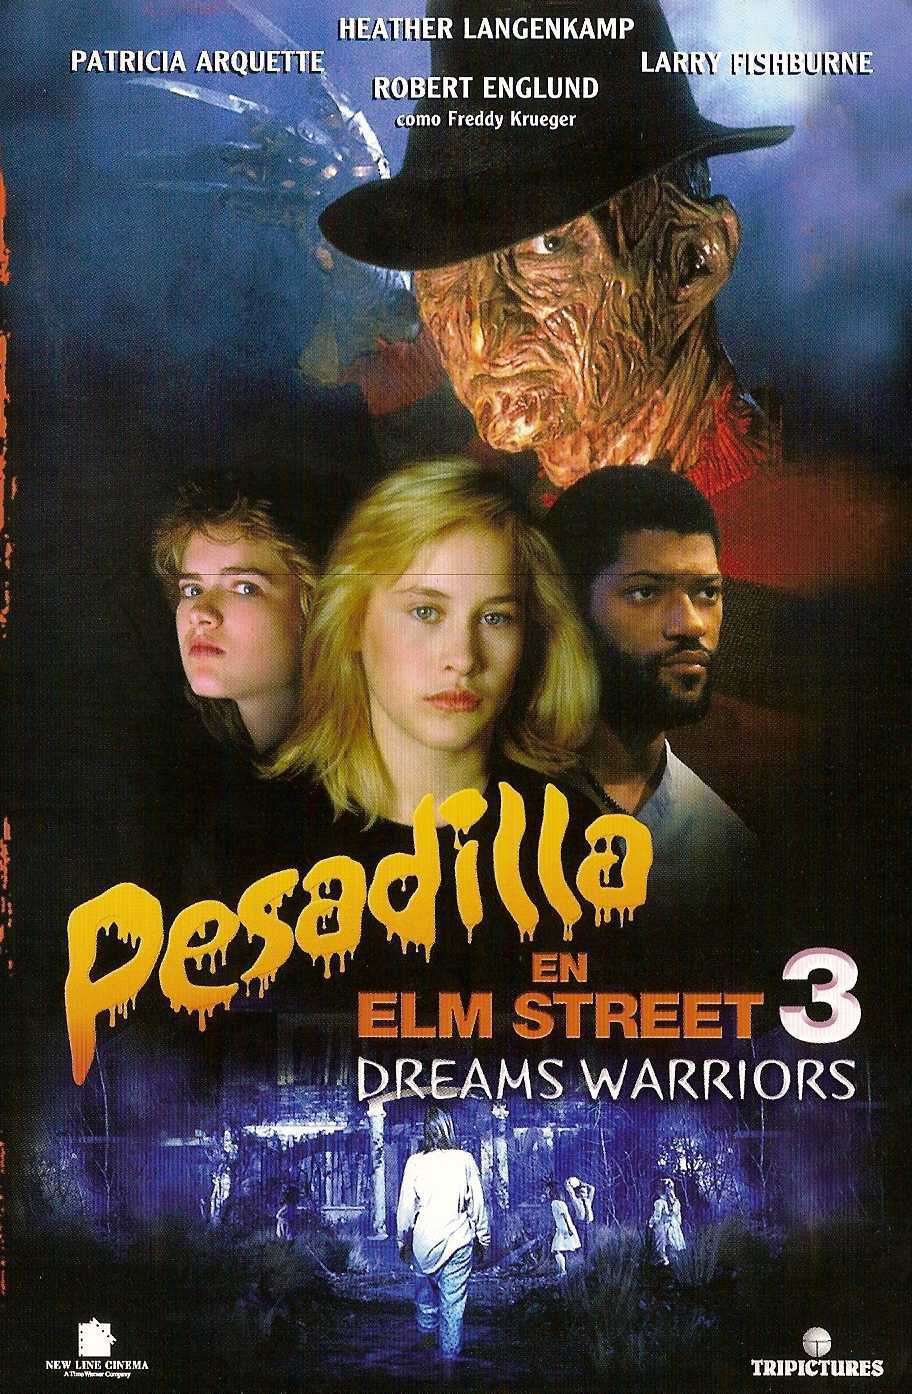 Cartel de Pesadilla en Elm Street 3, guerreros de los sueños - España